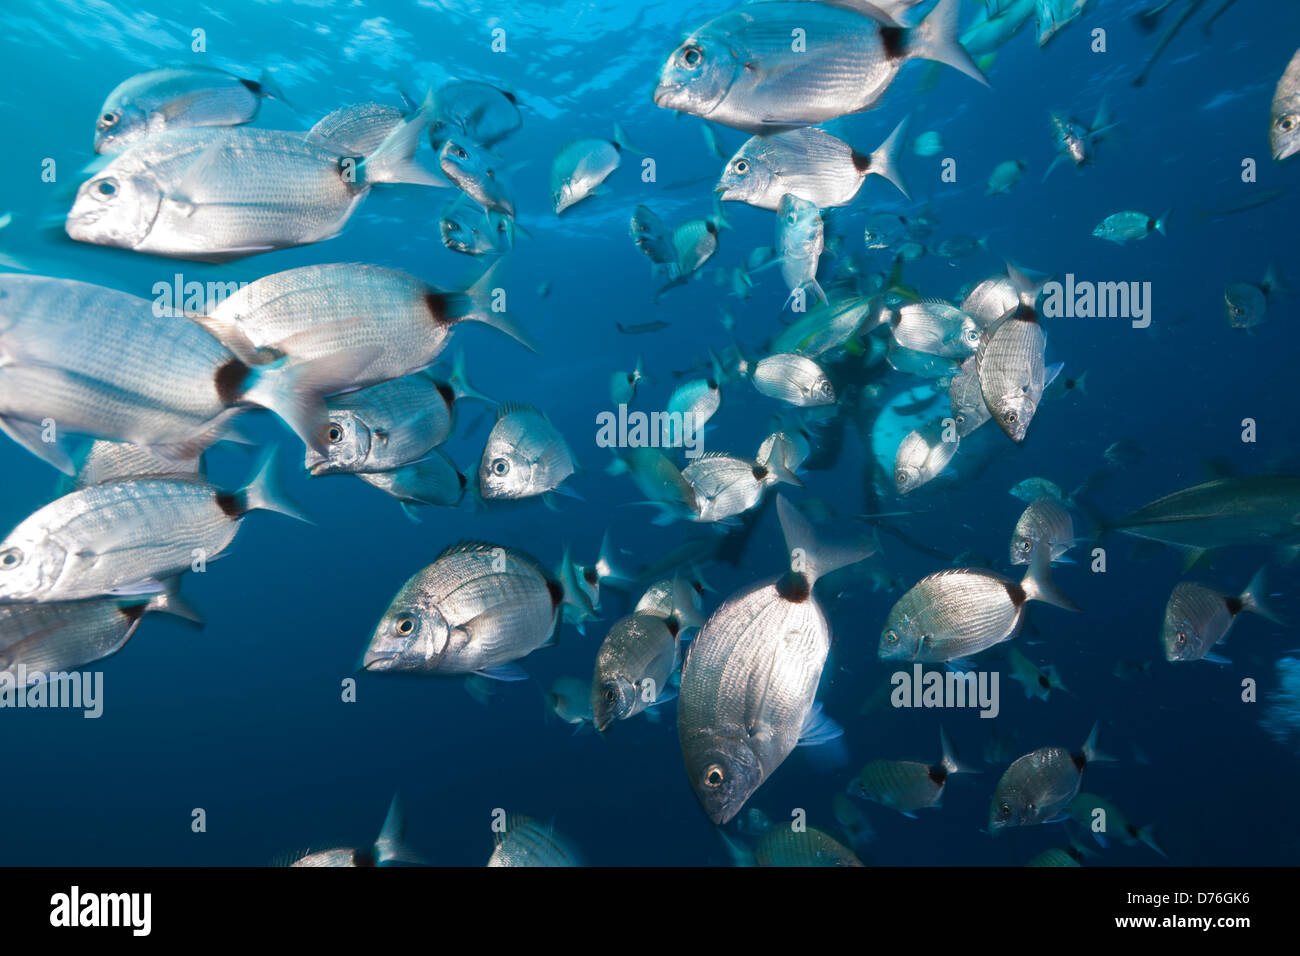 Fischschwarm der Brachsen, Brasse Capensis, Aliwal Shoal, Indischer Ozean, Südafrika Stockfoto